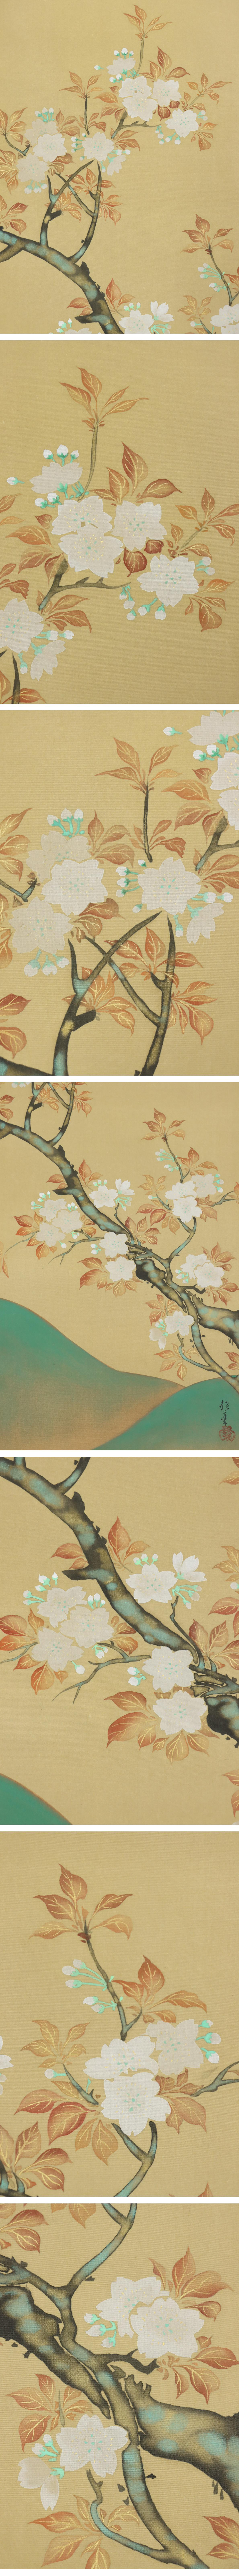 超激得豊富な◆酒井抱一◆山桜◆日本画◆手彩色◆二重箱◆絹本◆掛軸◆m561 花鳥、鳥獣